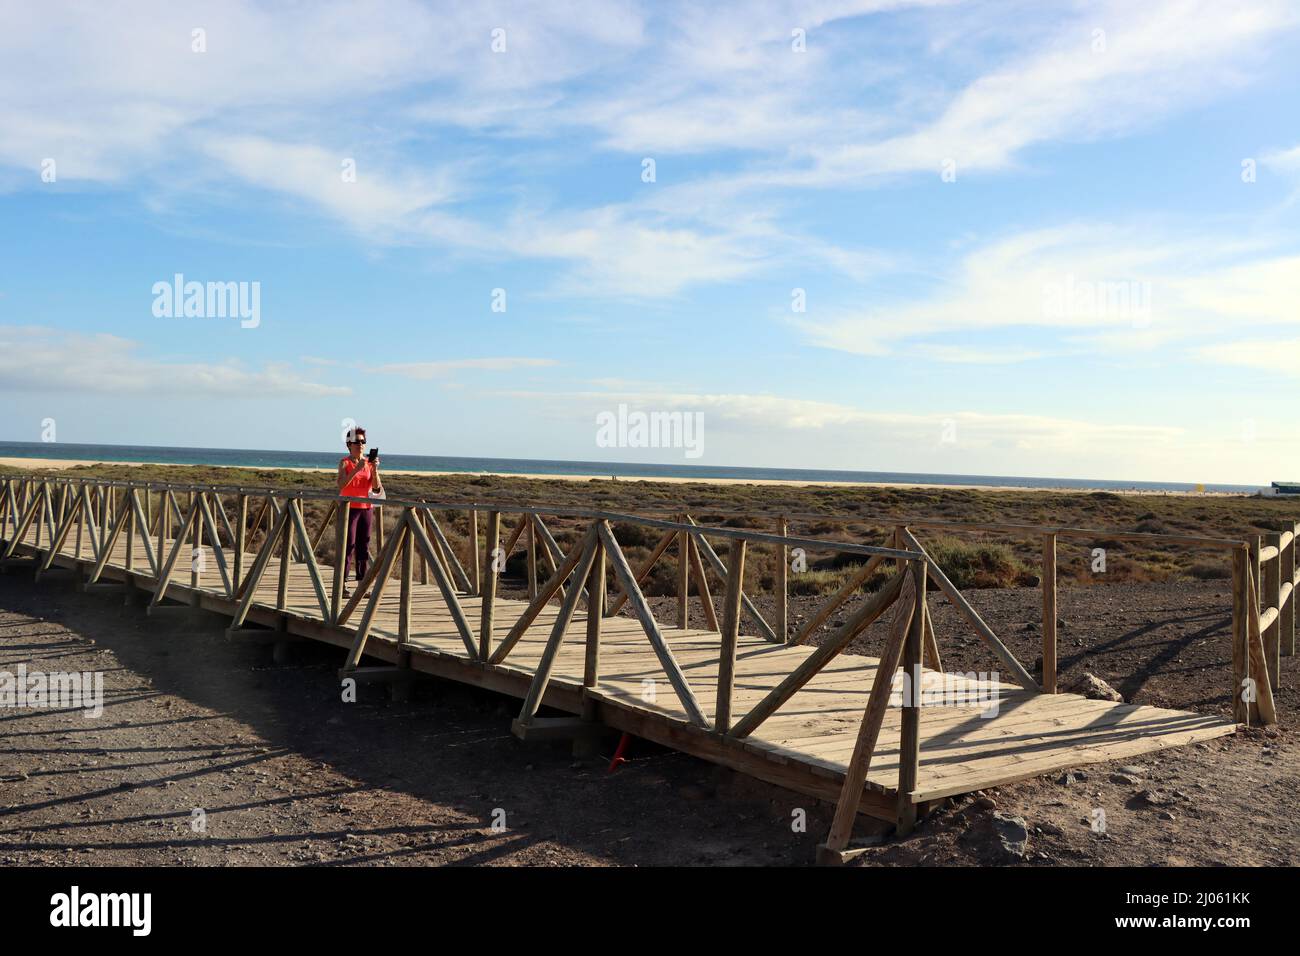 Saladar de Jandía, ein Feuchtgebiet und Naturschutzgebiet an der Playa del Matorral, das zeitweise von Meerwasser überflutet wird - Fussgängerbrücke z Stock Photo